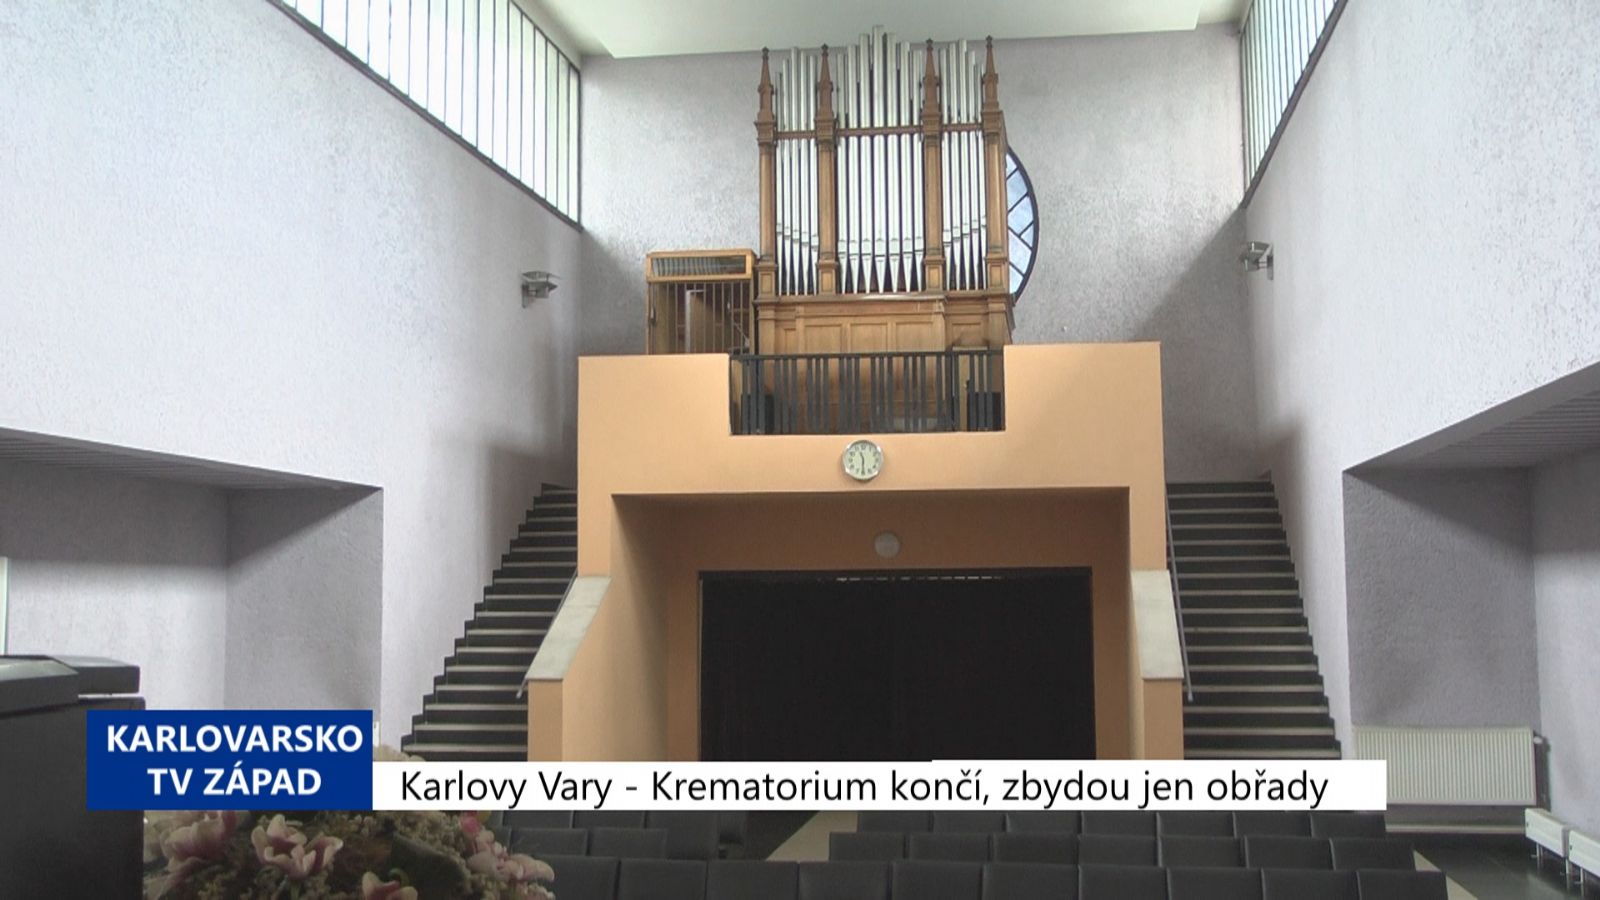 Karlovy Vary: Provoz krematoria skončí, zbydou jen obřady (TV Západ)